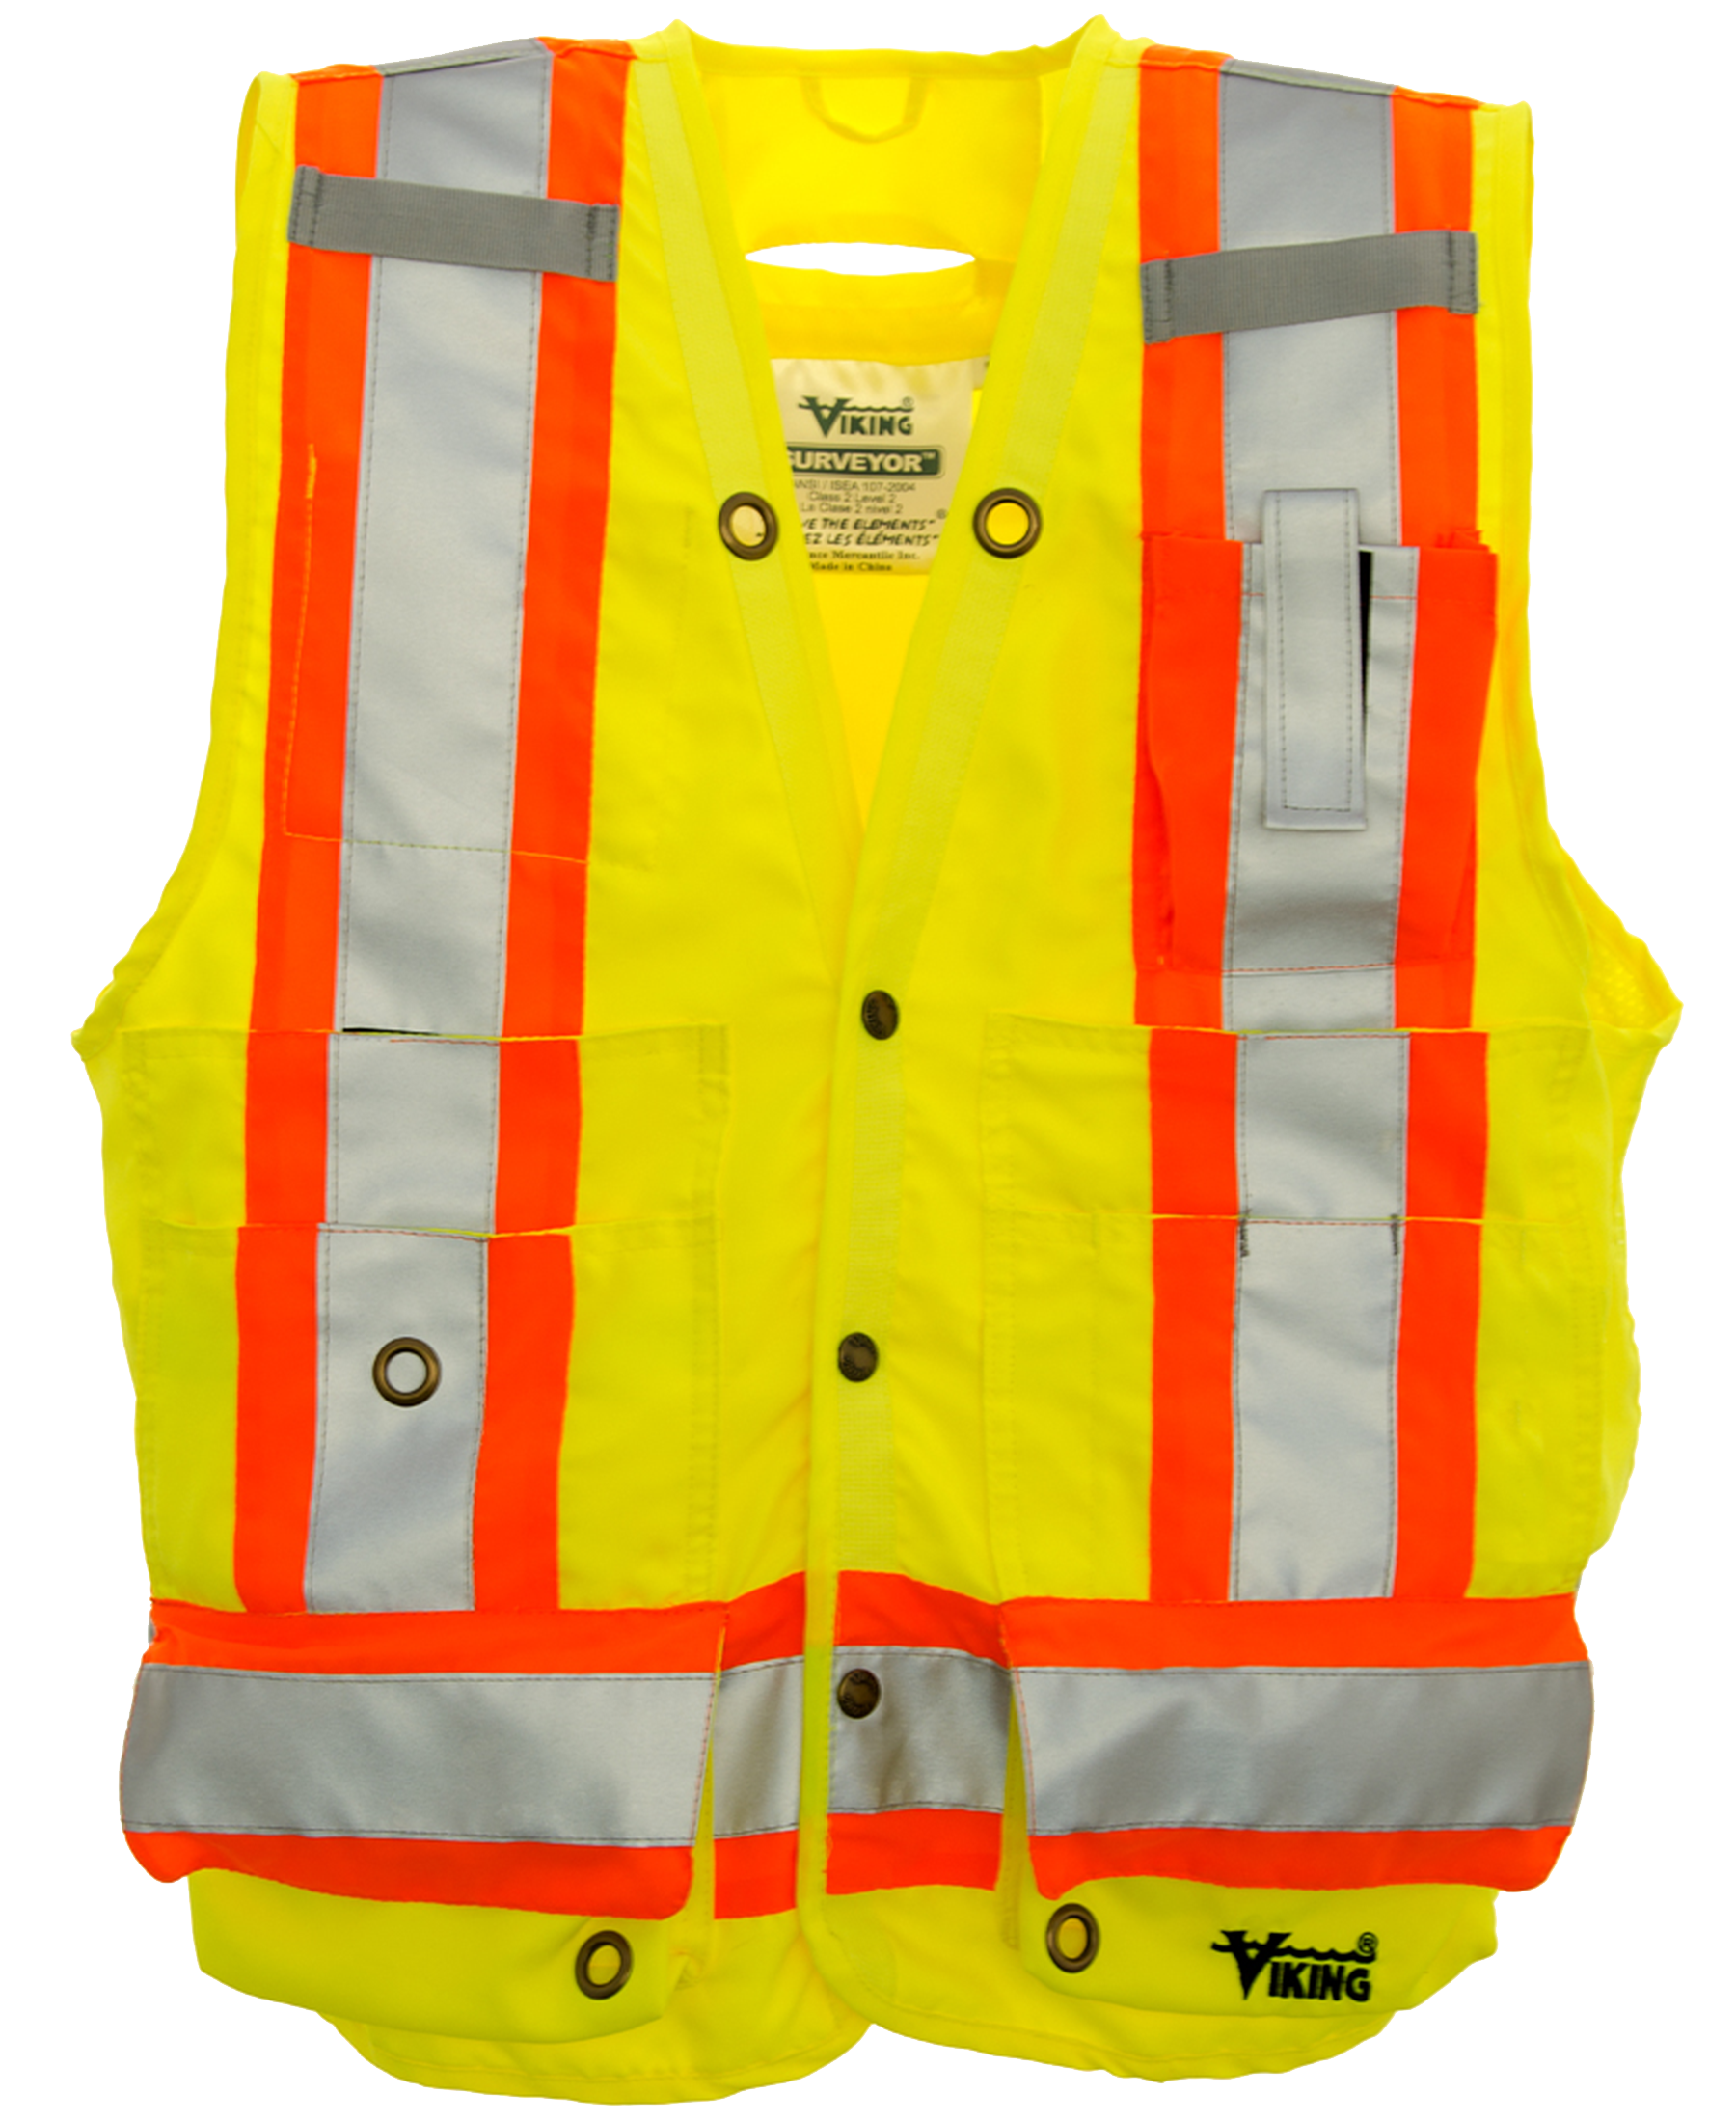 Viking Hi-Vis Surveyor Safety Vest - Work World - Workwear, Work Boots, Safety Gear